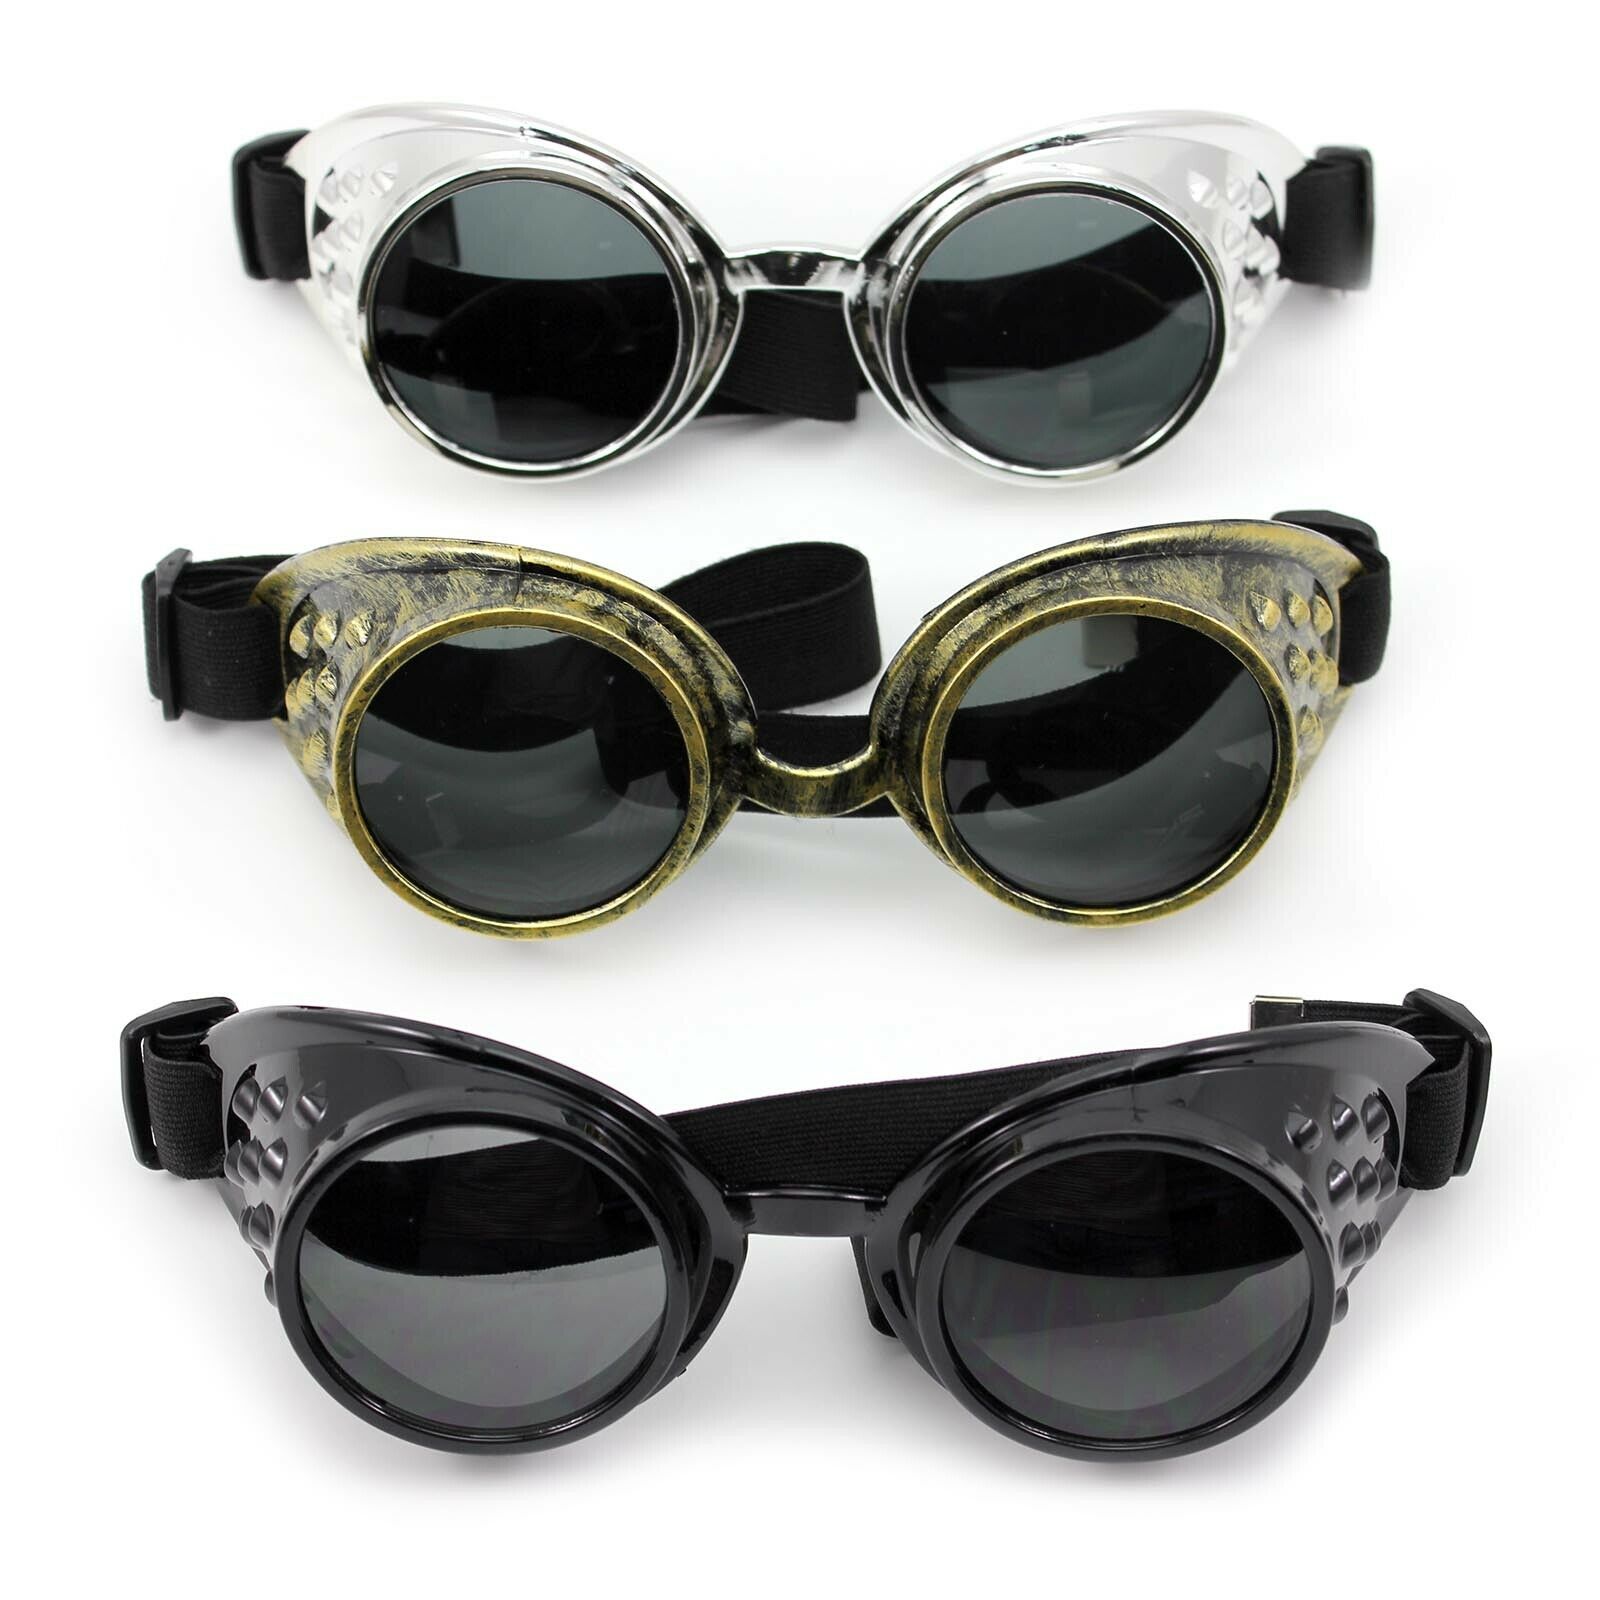 Retro Cyber Goggles Glazen Cyber Goggles Steampunk Bril Vintage Retro Lassen Gothic Zonnebril